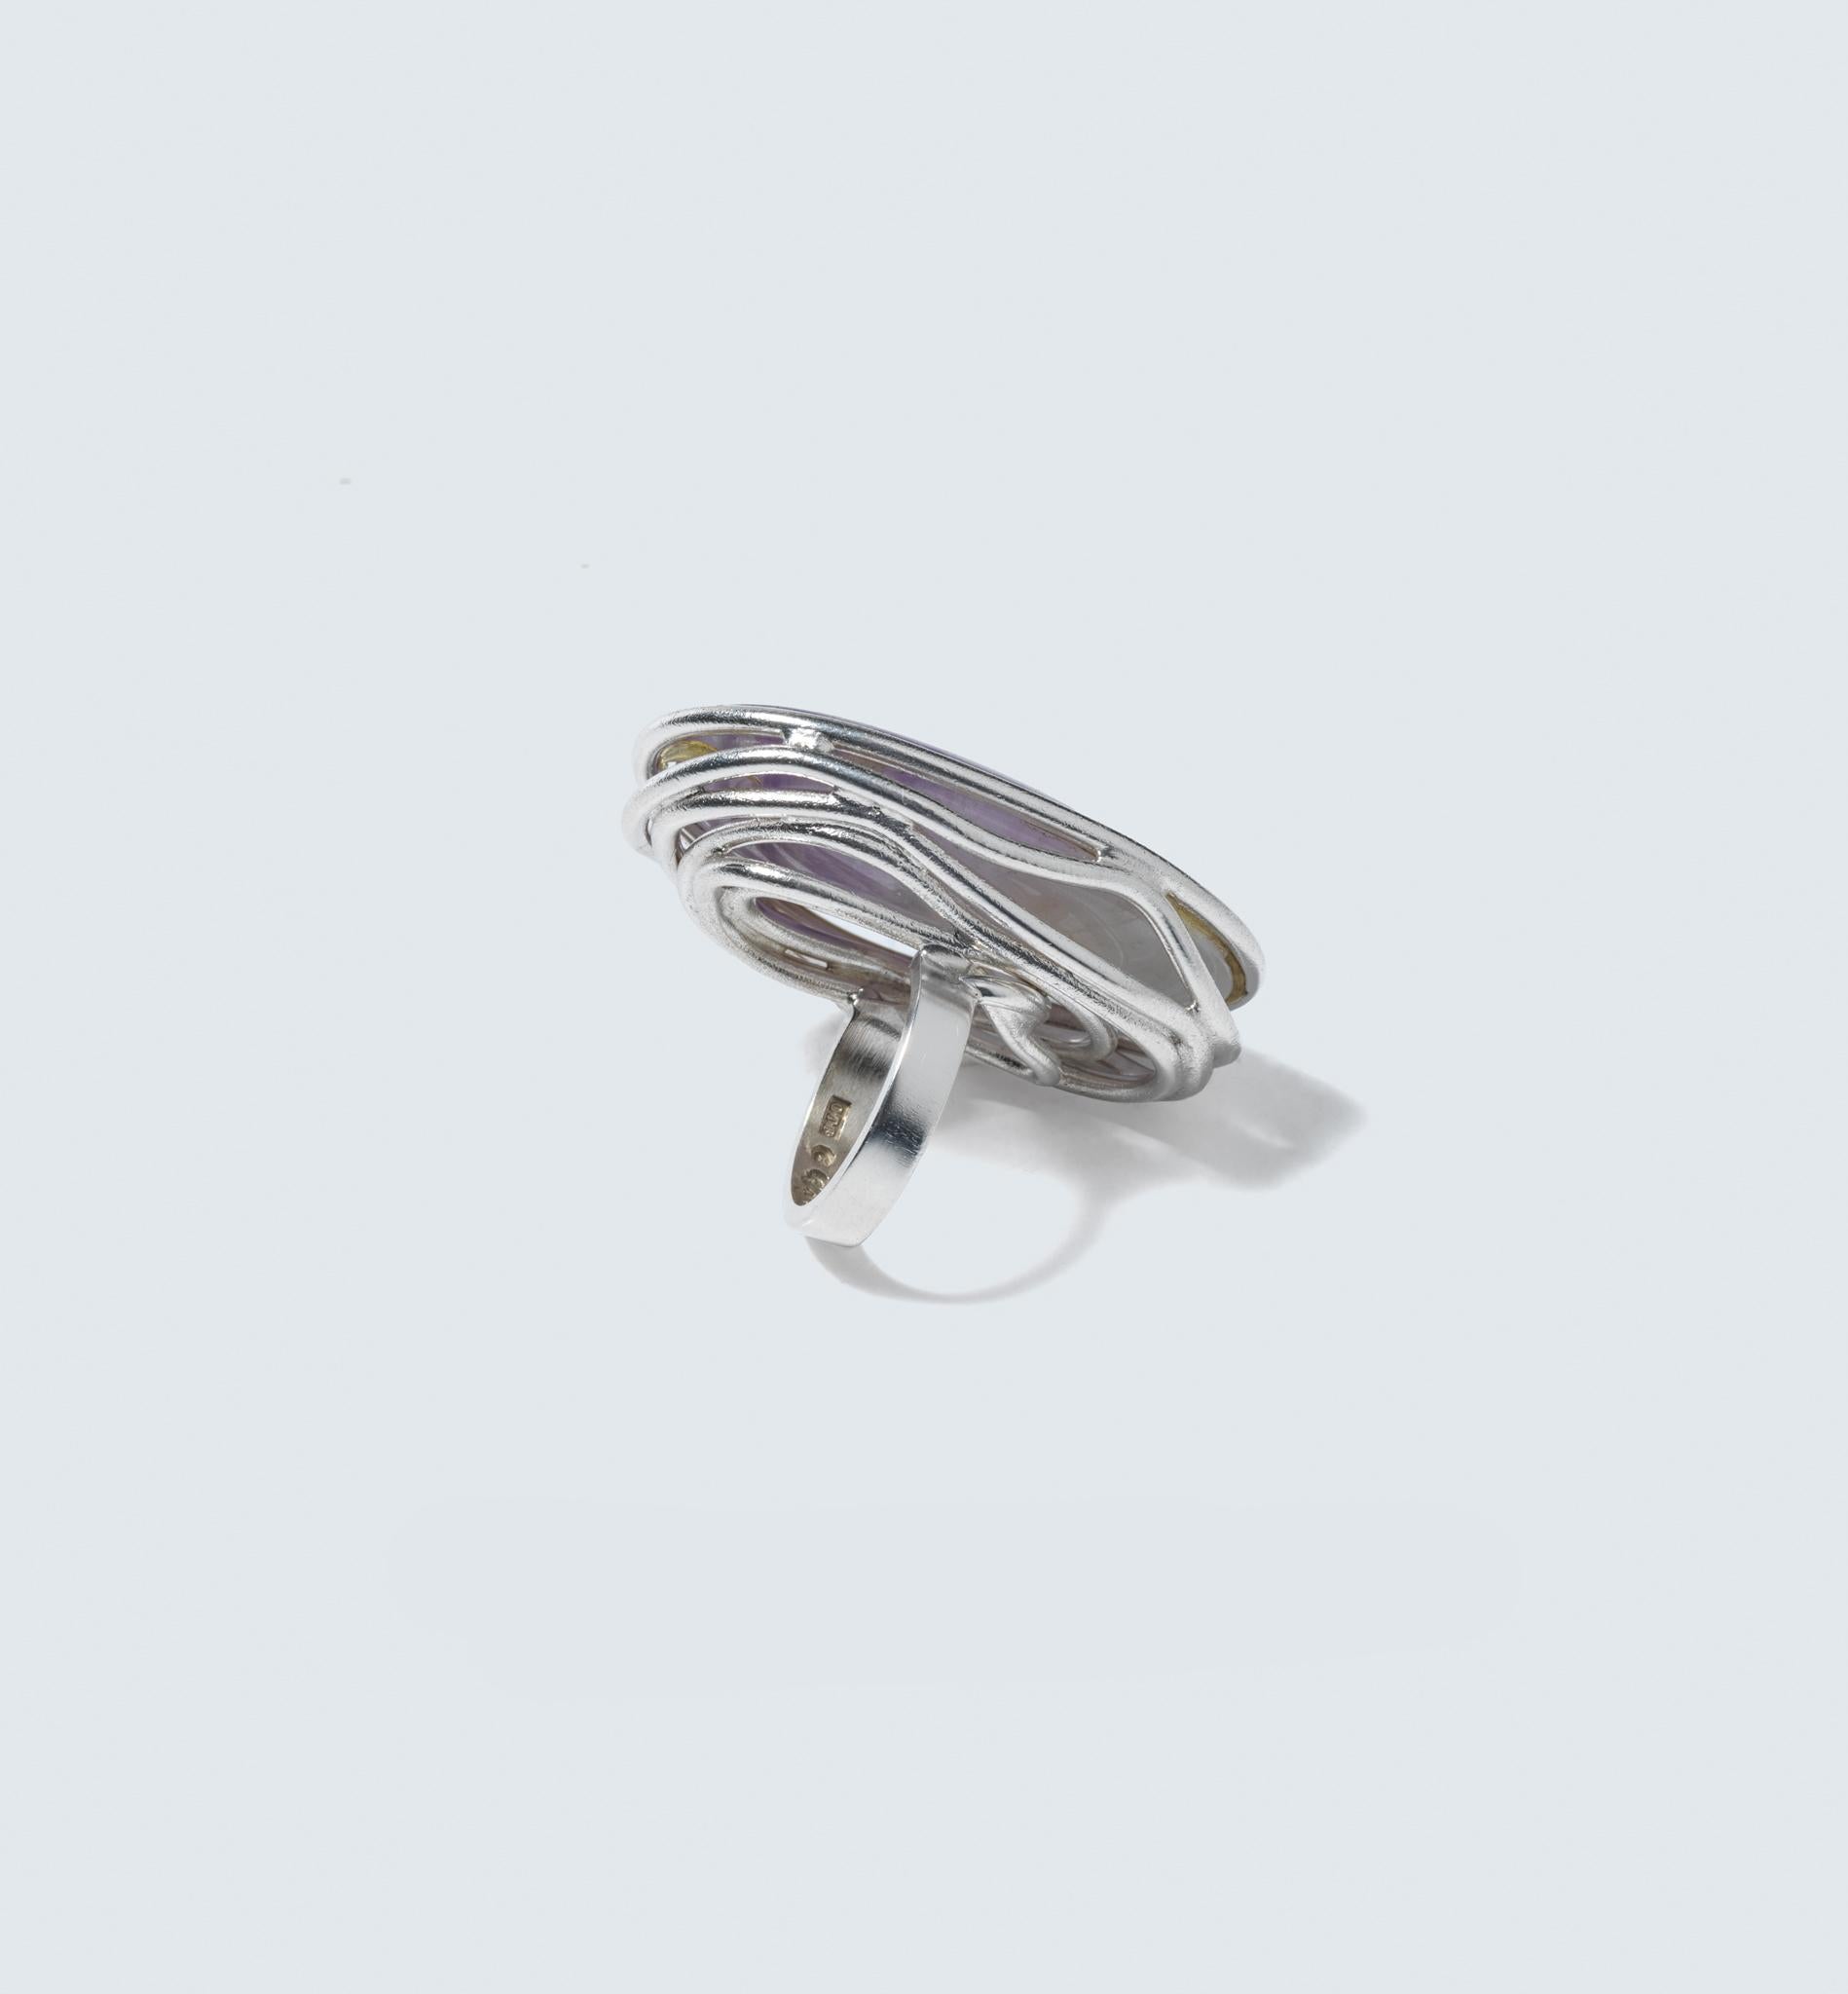 Dies ist ein großer und auffälliger Ring mit einem großen ovalen Amethysten im Cabochon-Schliff als Herzstück. Der Amethyst ist auf einzigartige Weise mit Silberdrähten gefasst, die sich um seinen Rand winden. Diese Drähte sichern nicht nur den